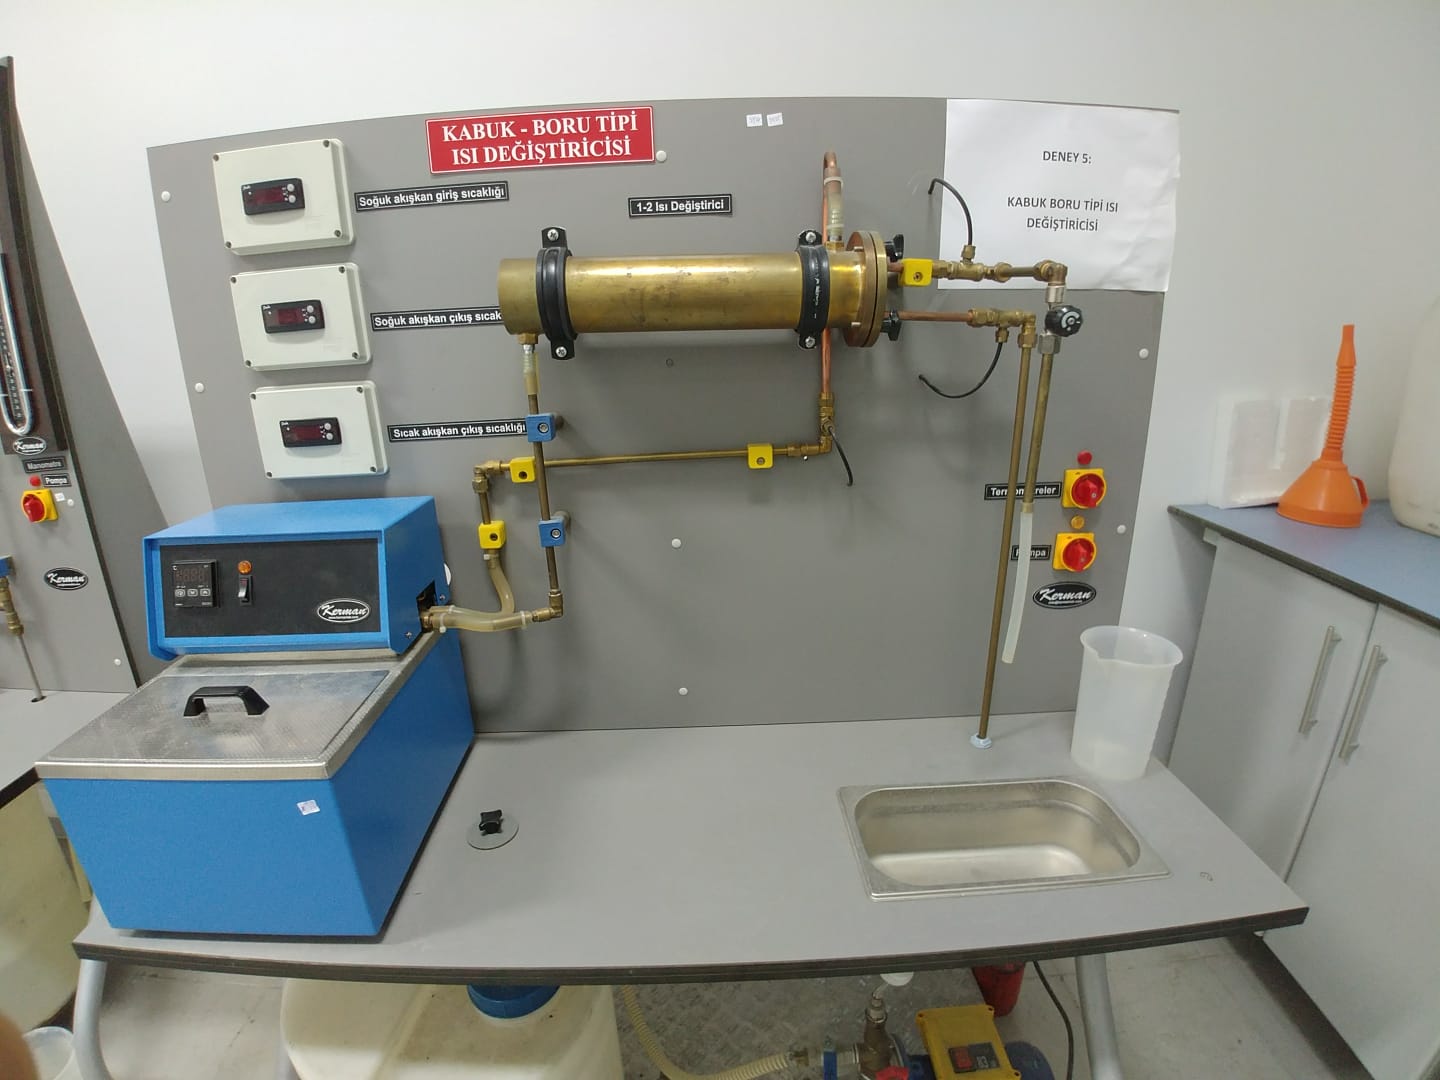 Kabuk boru tipi ısı değiştirici deneyi düzeneği-Fotoğraf